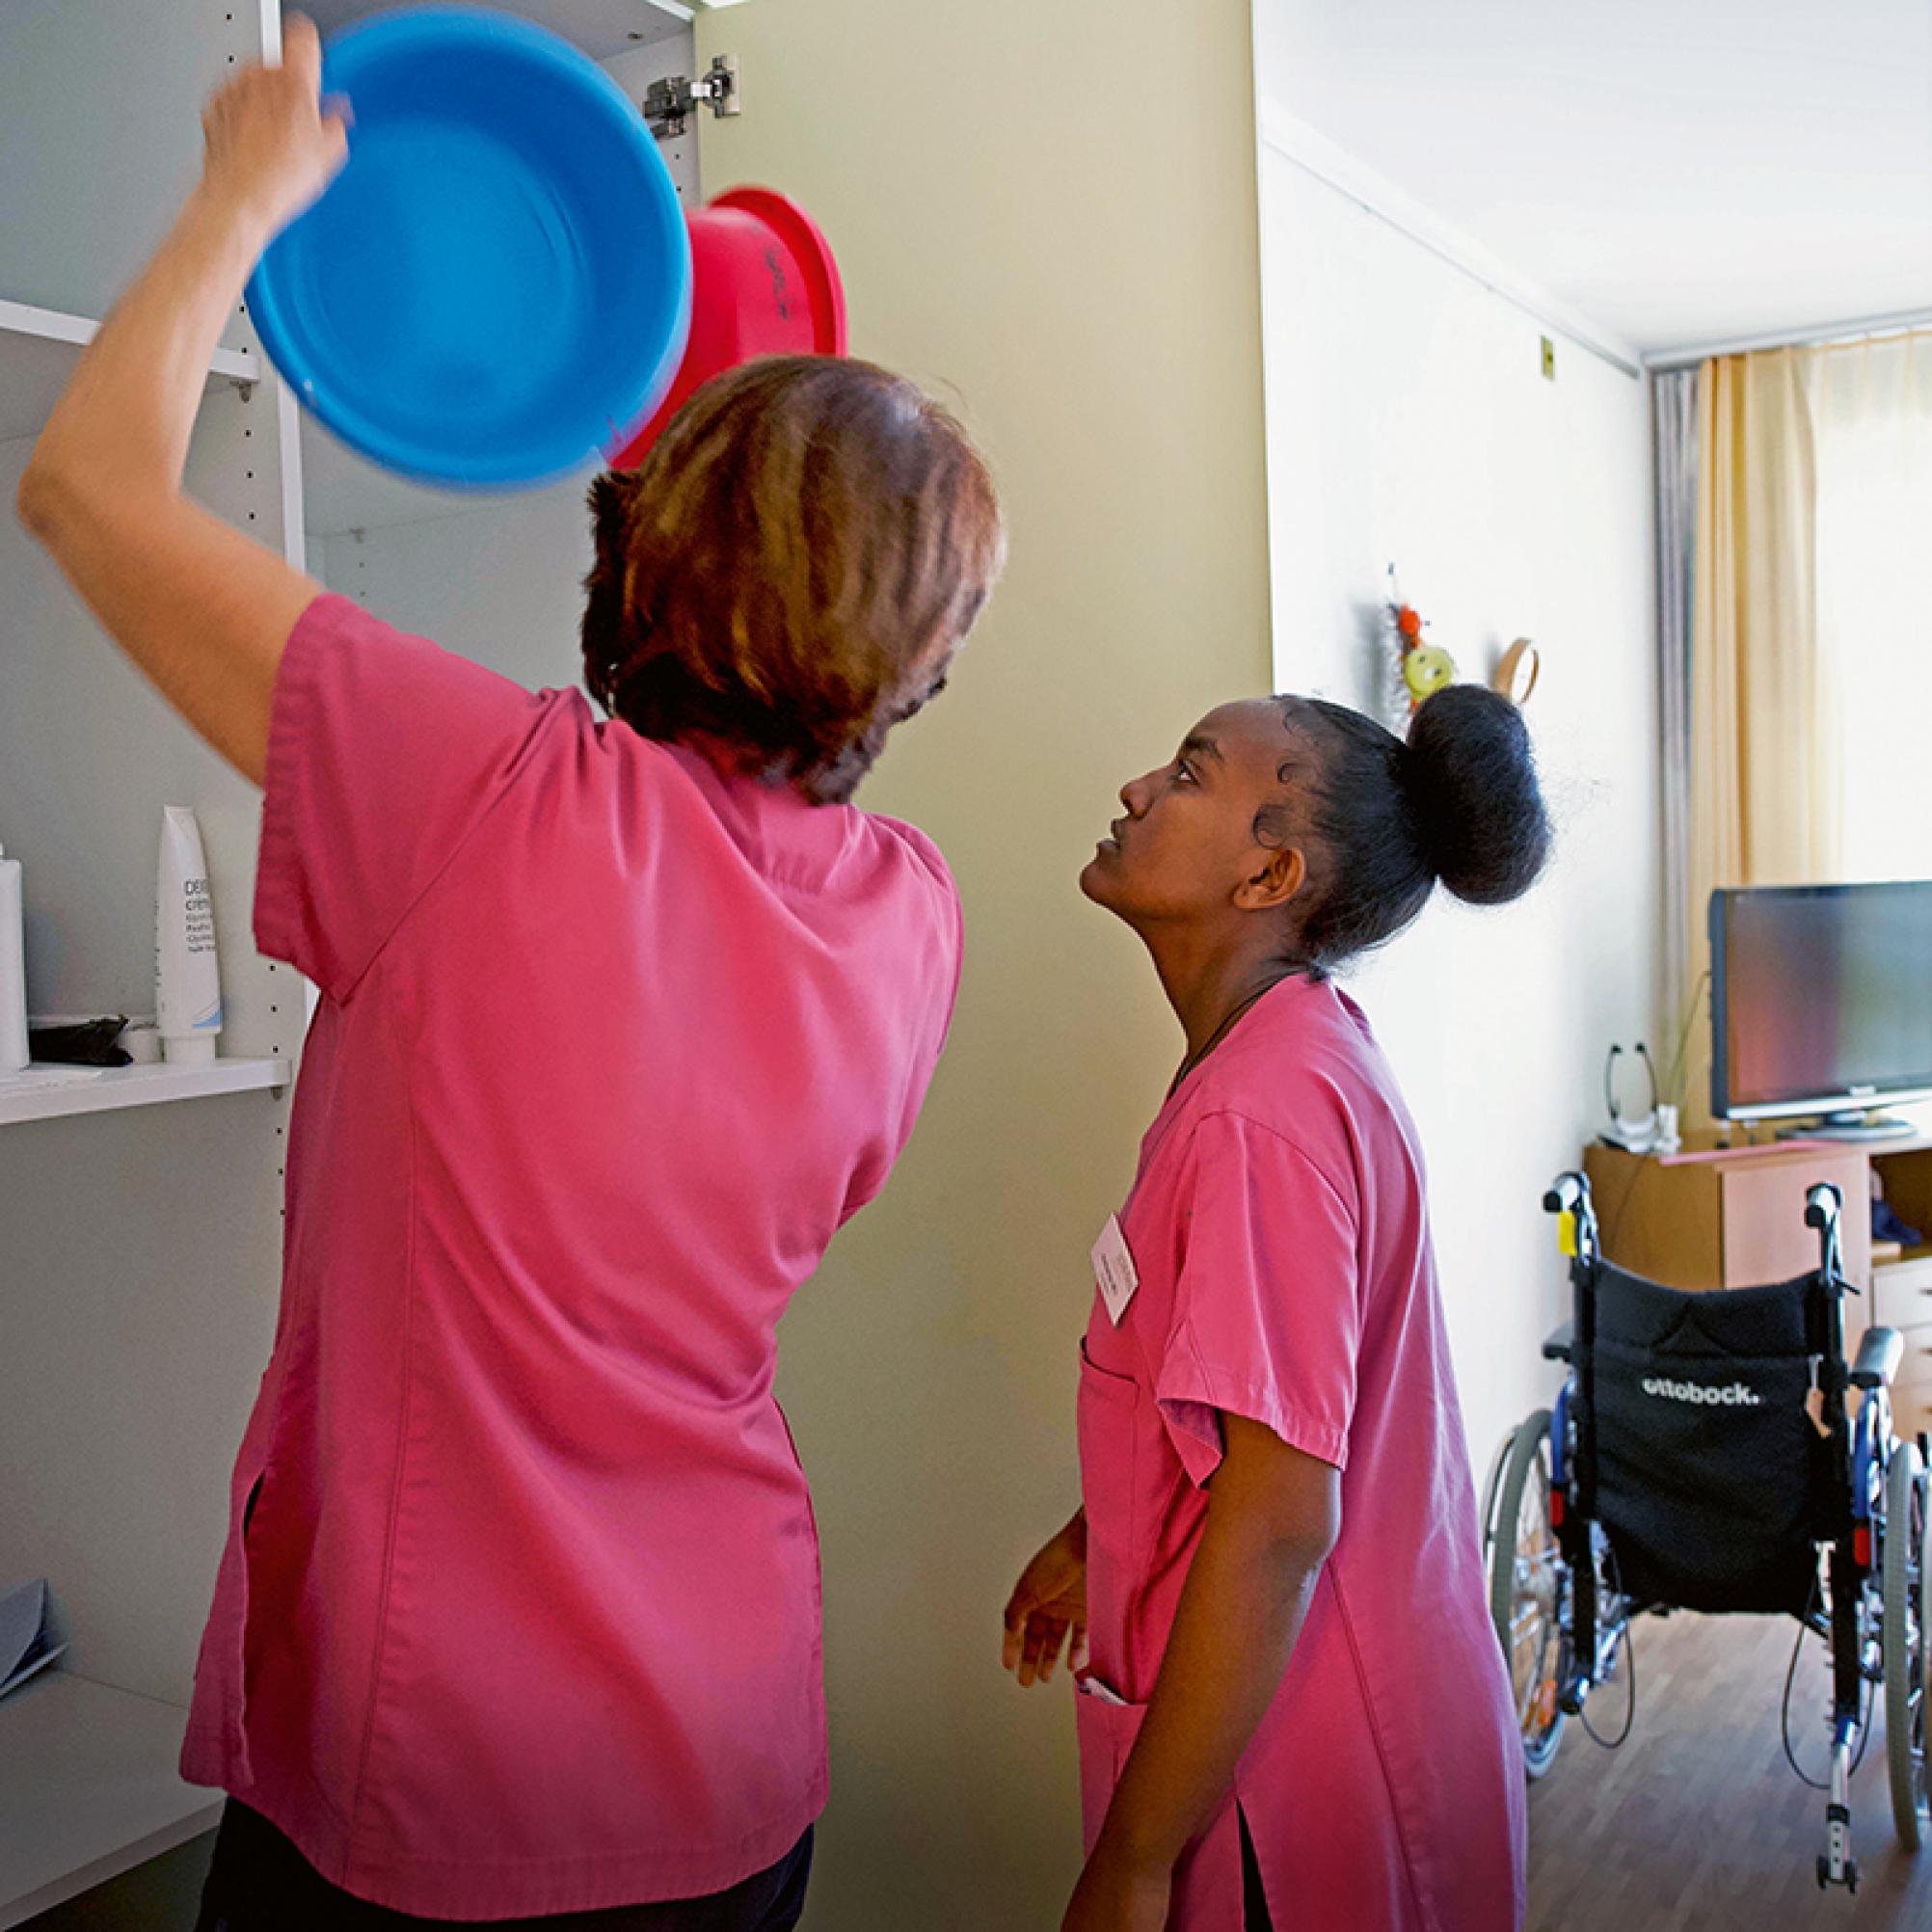 Dans une chambre de maison de retraite, une soignante montre à une jeune femme ce qu’il faut faire.